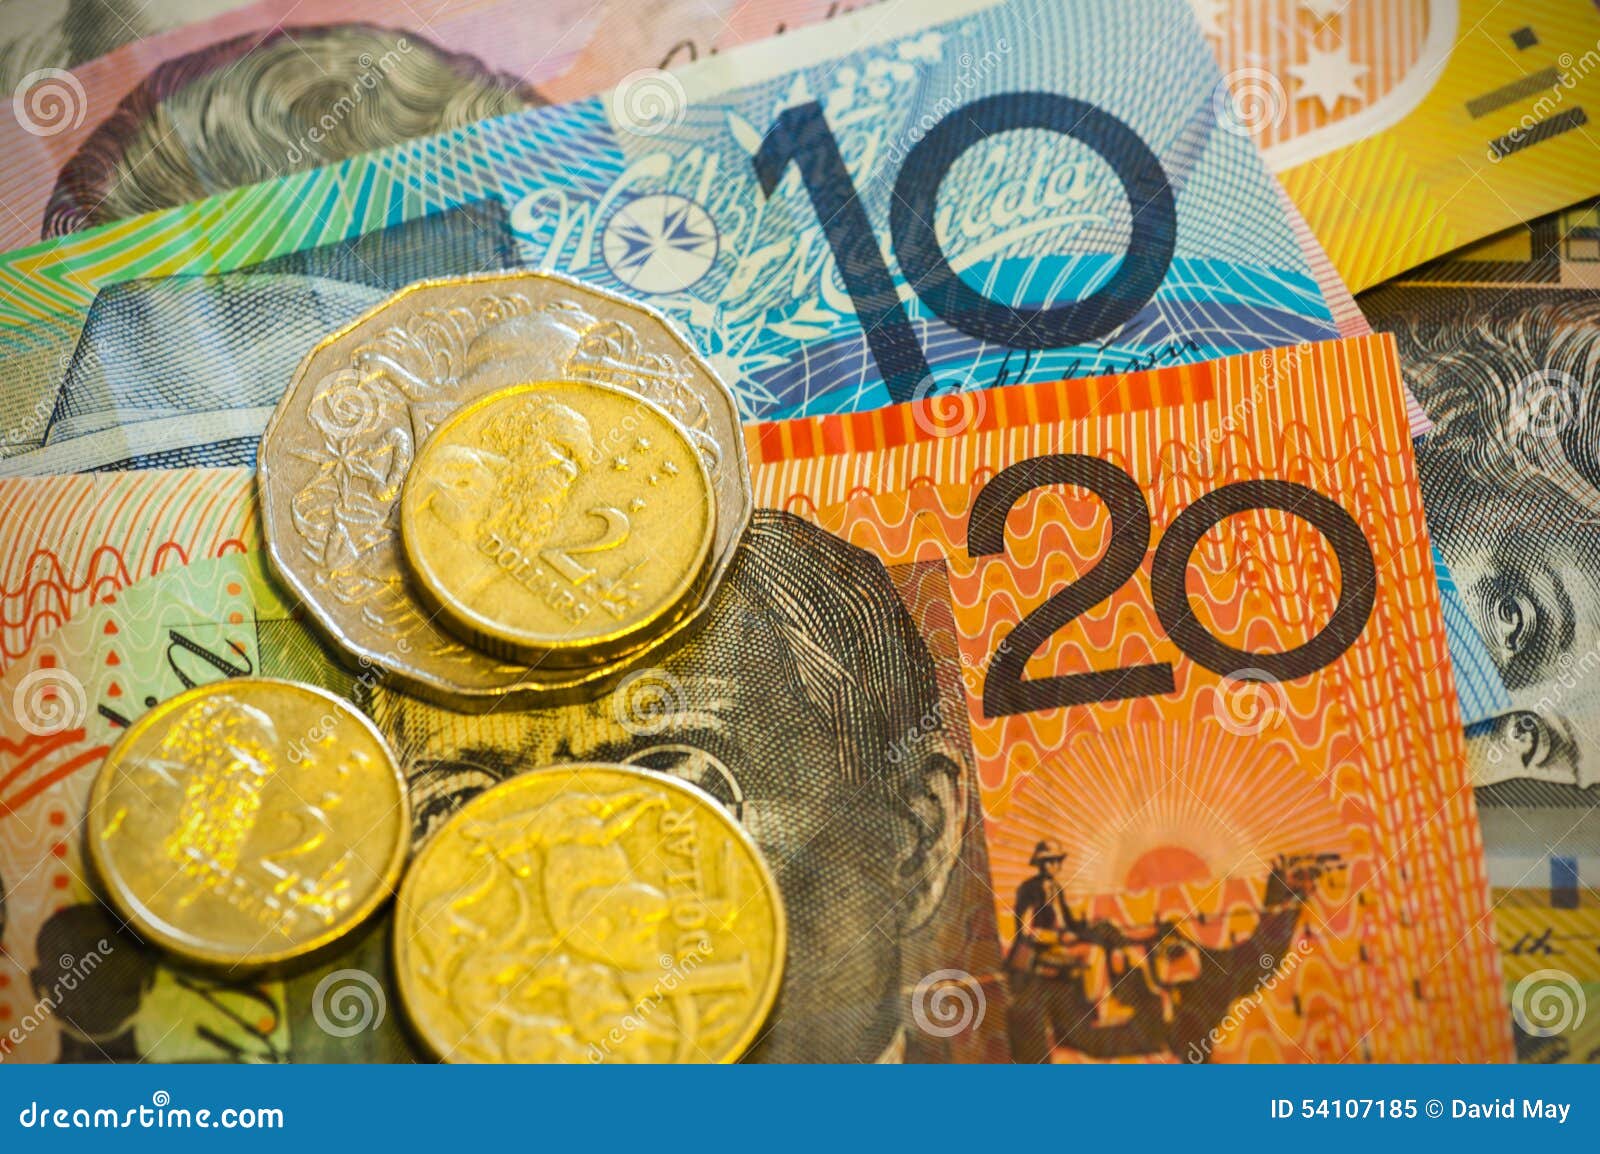 澳大利亚2013年100元塑料钞签名如图大洋洲纸币实物图UNC-价格:555元-se97977253-外国钱币-零售-7788收藏__收藏热线